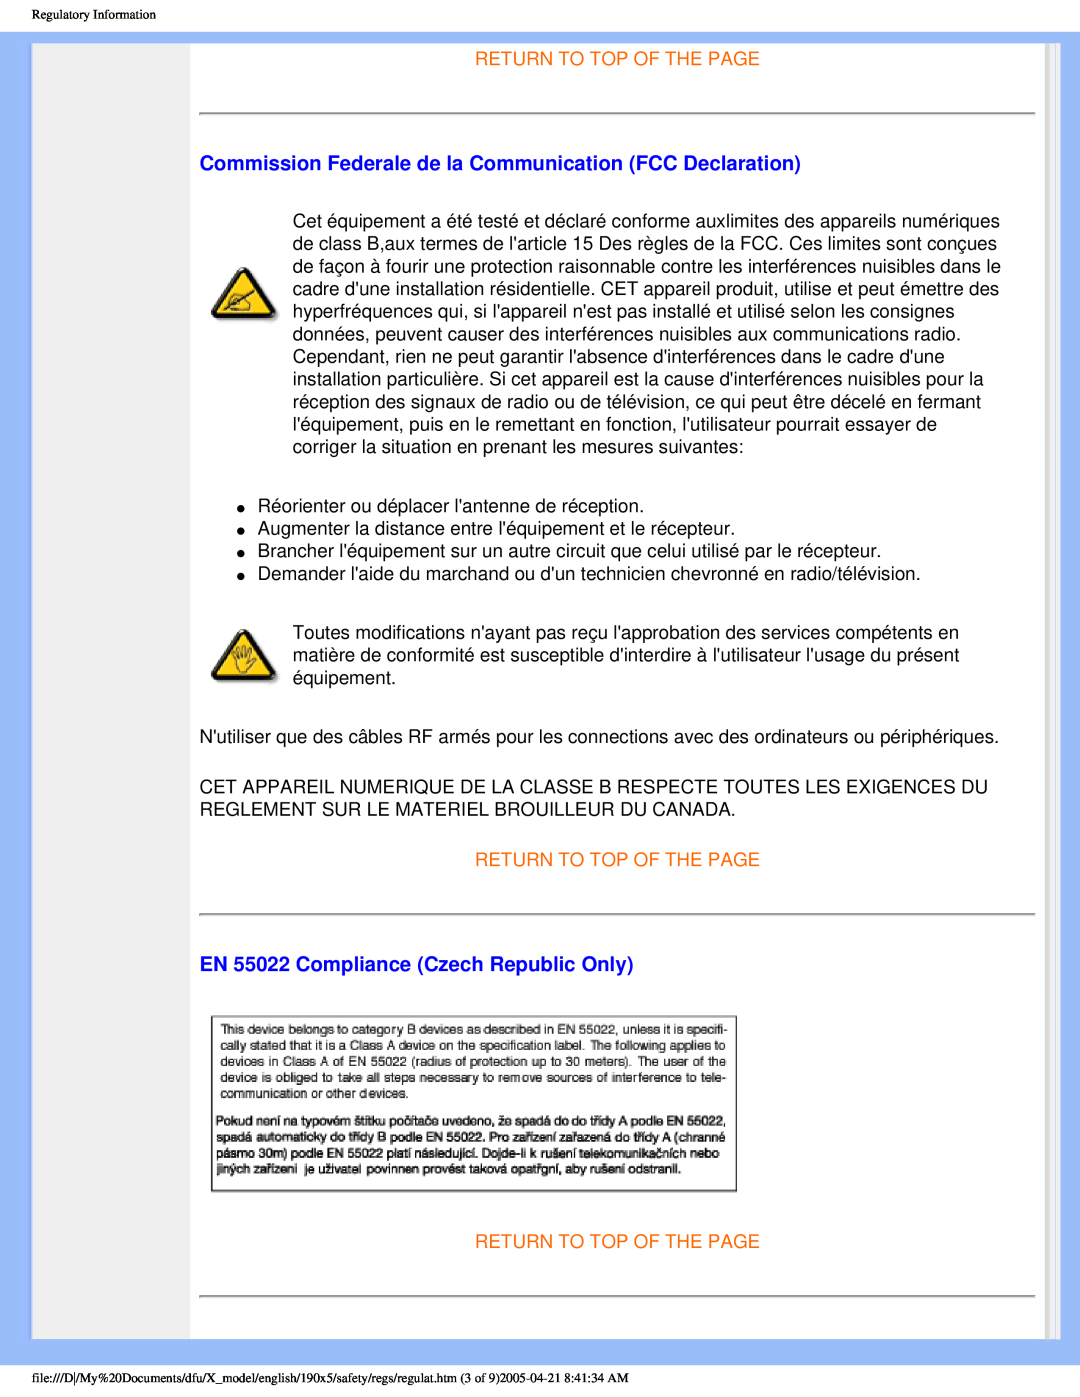 Philips 190X5 user manual Commission Federale de la Communication FCC Declaration, EN 55022 Compliance Czech Republic Only 